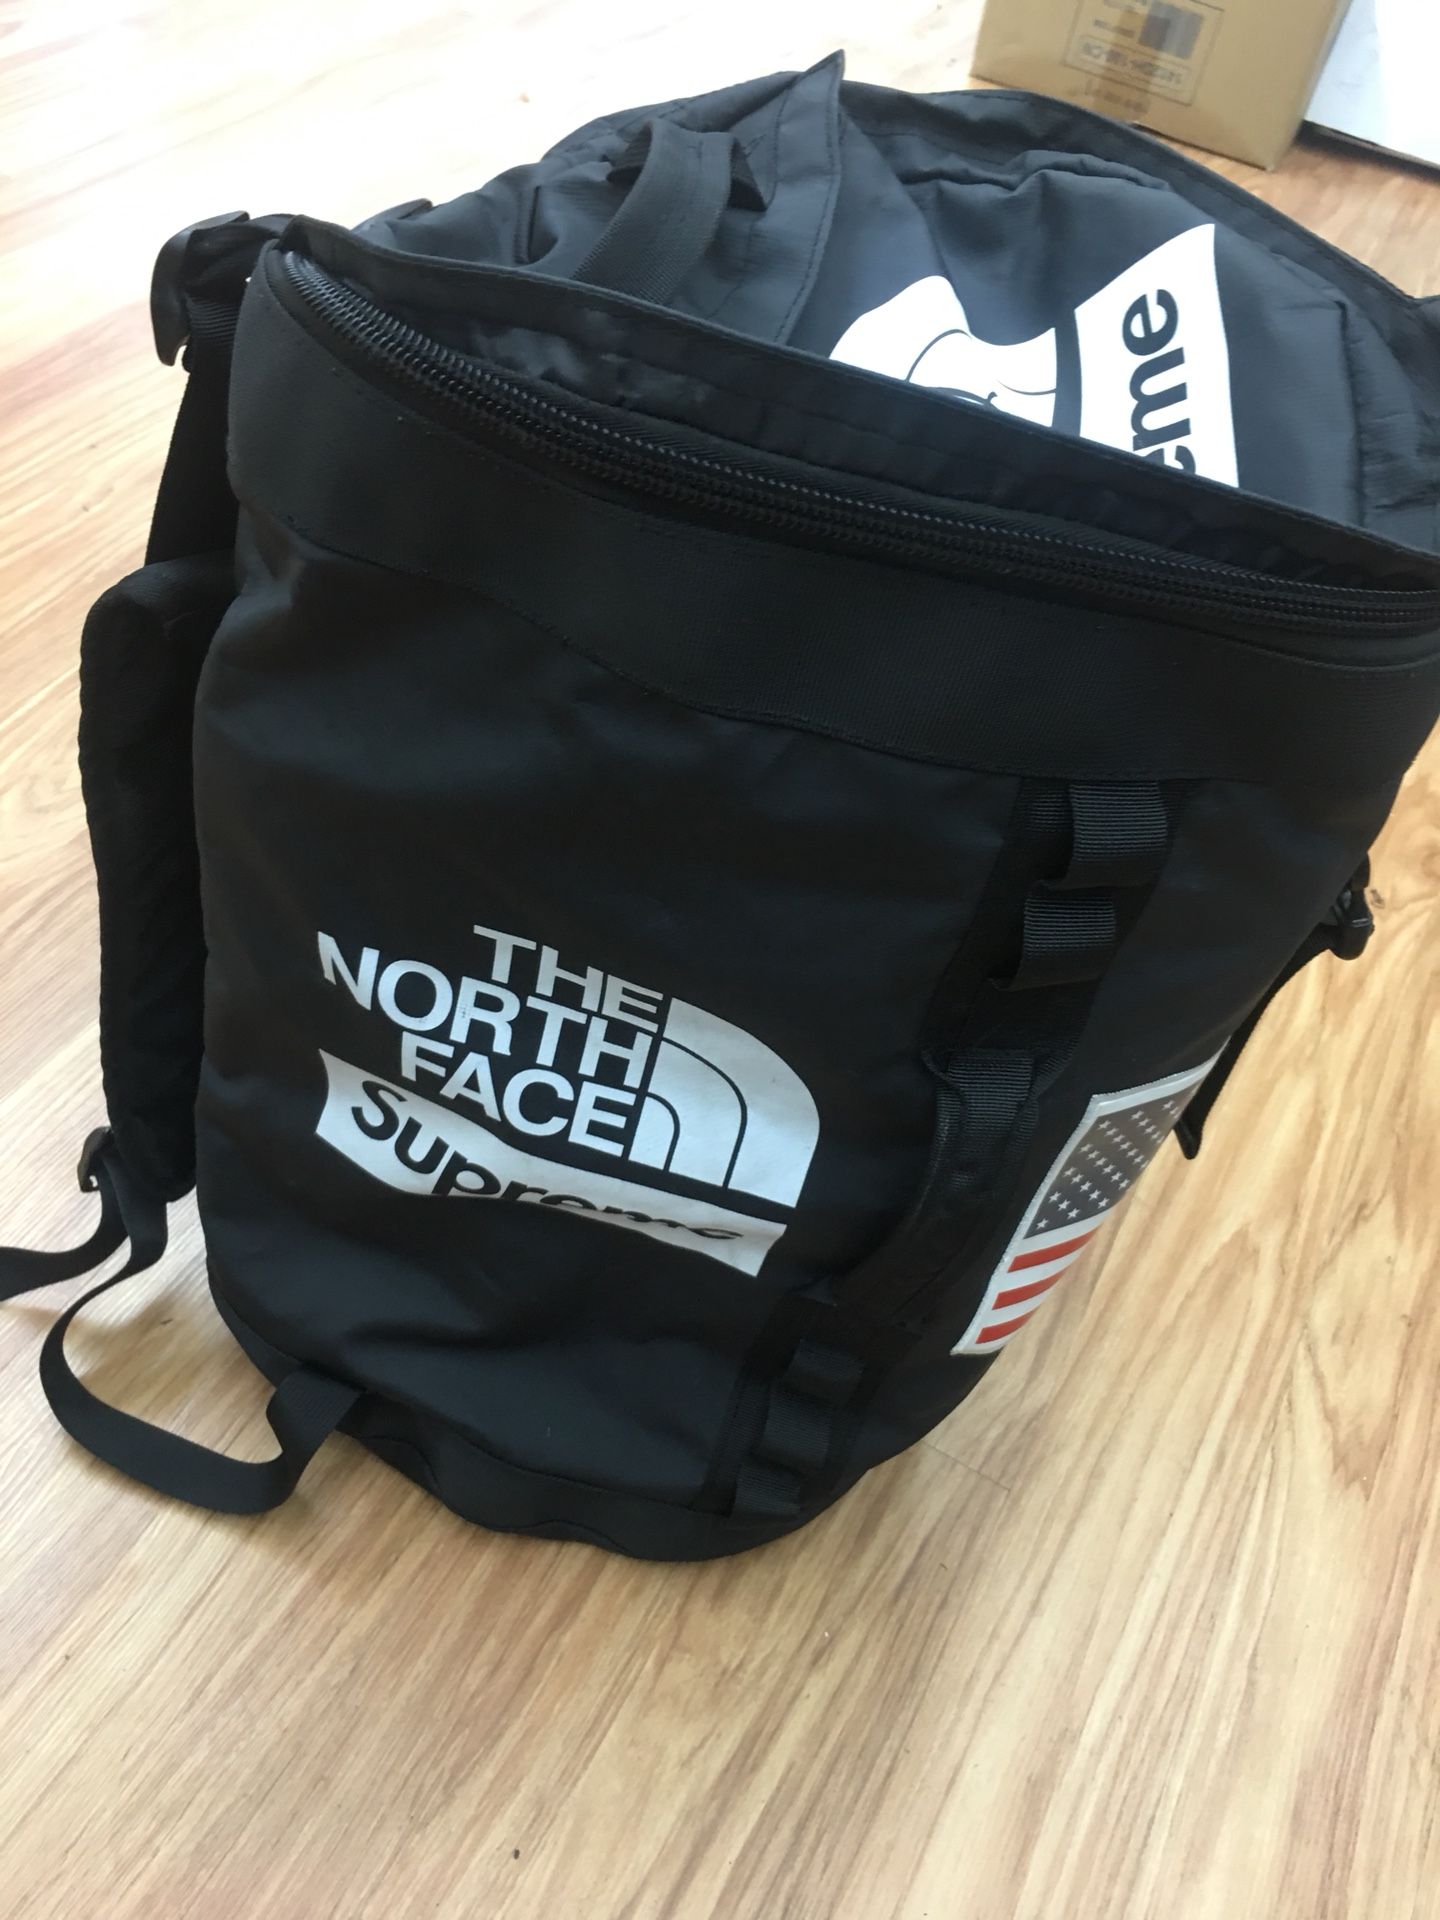 North face supreme back packs $350